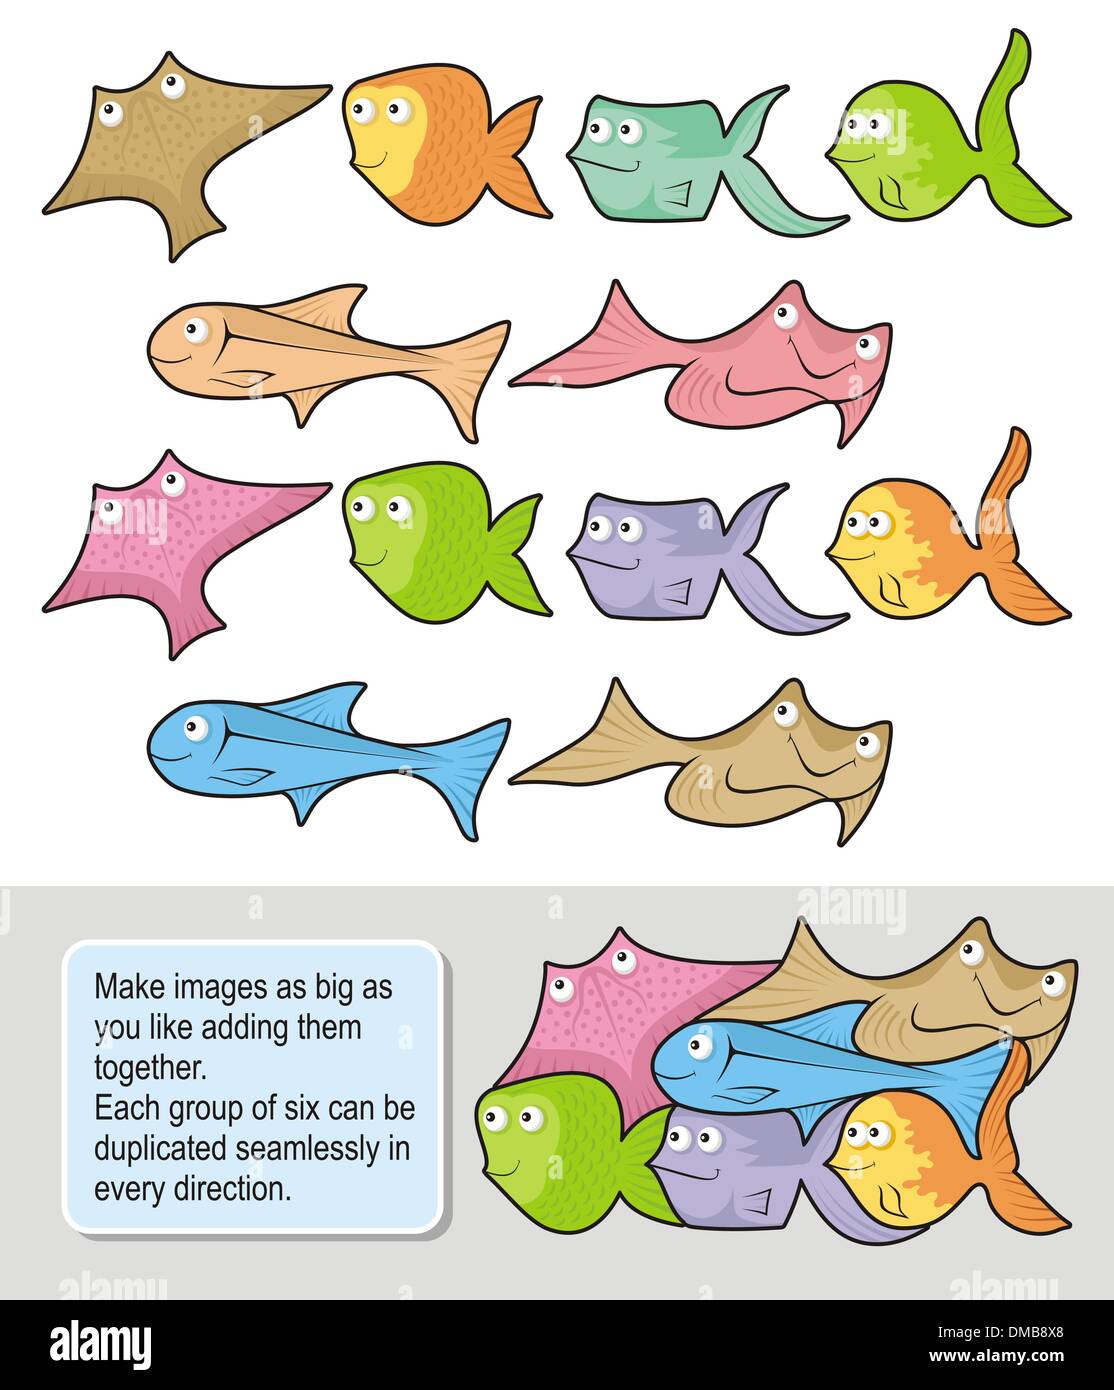 Fish cartoons Stock Vector